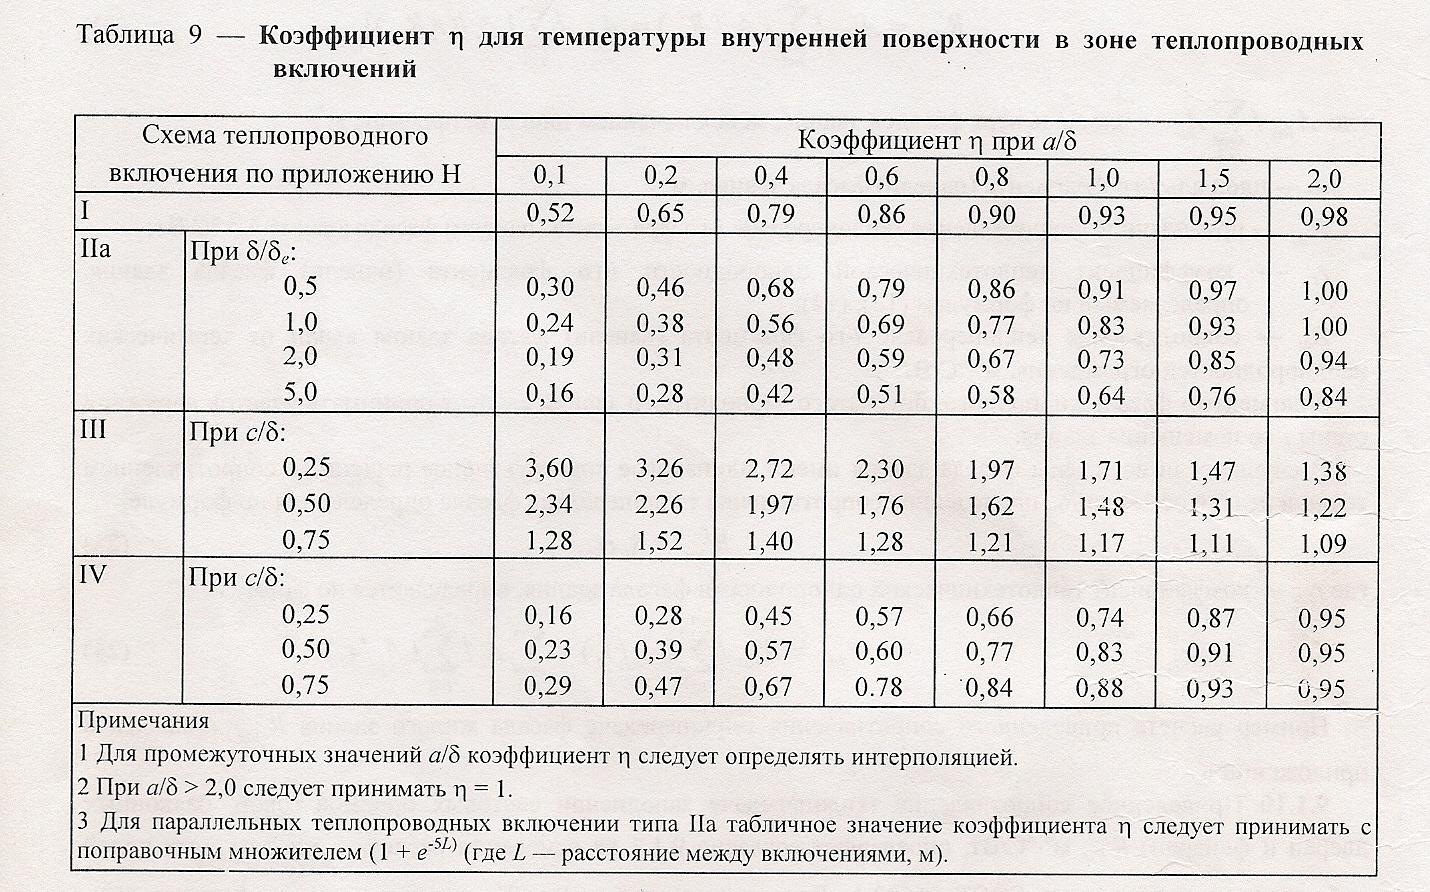 Коэффициент наружного воздуха. Средняя температура отопительного периода СНИП таблица. Теплопроводные включения. Расчетная температура наружного воздуха для Москвы. Расчётная температура наружного воздуха за отопительный период.